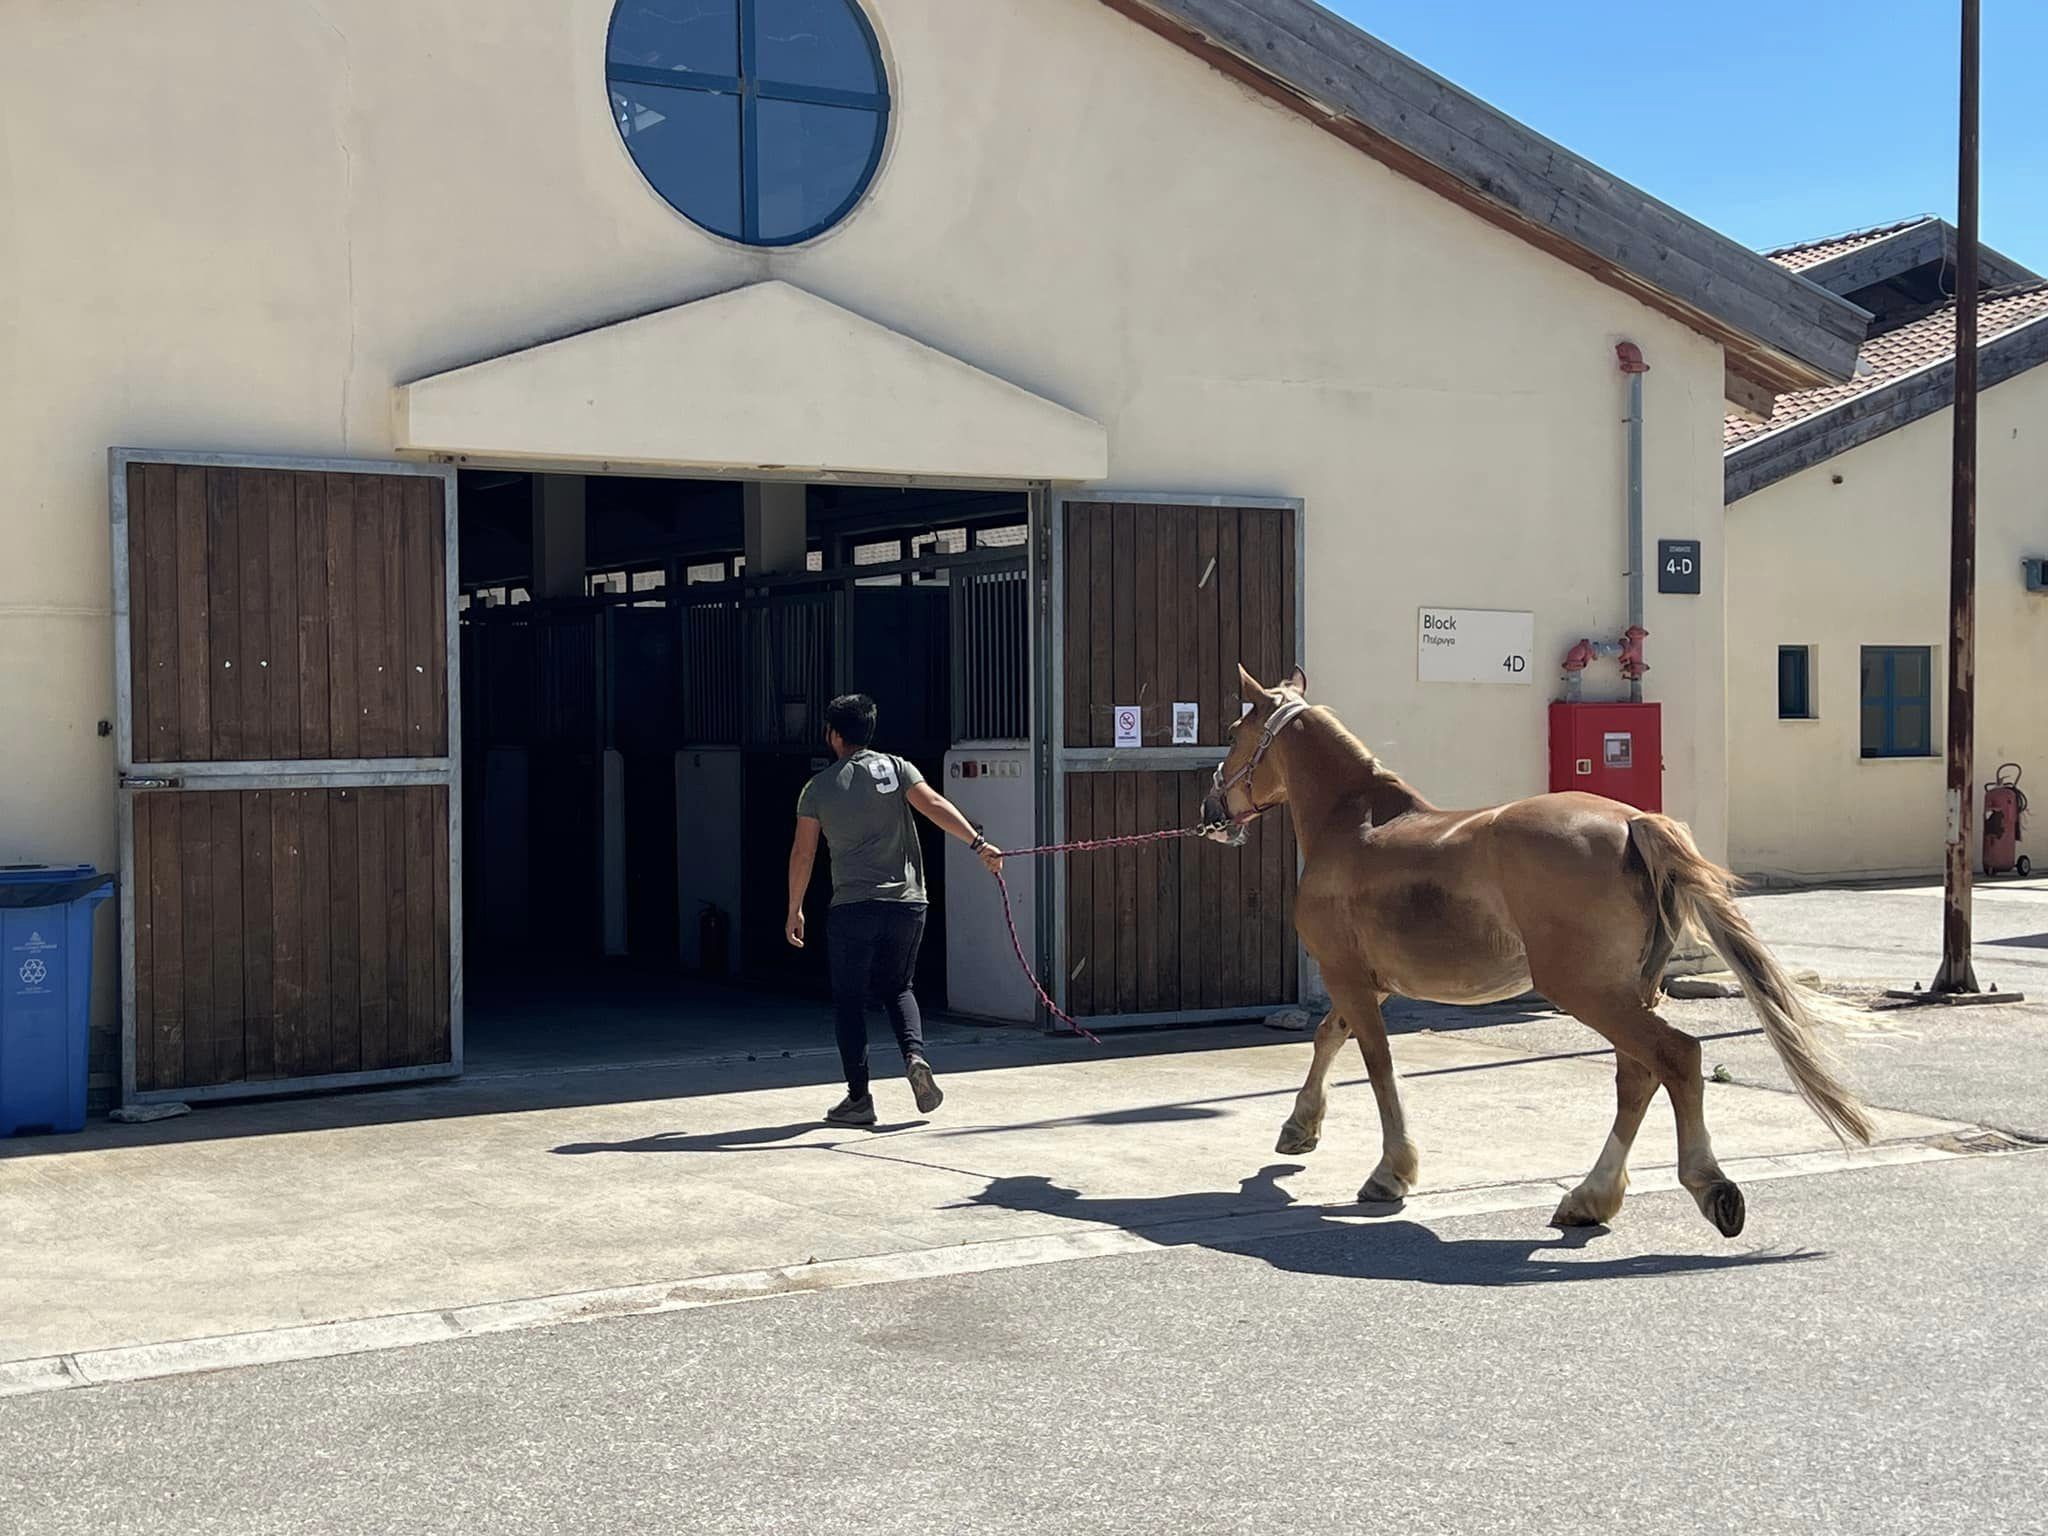 Μεταφέρονται στο Ολυμπιακό Κέντρο Ιππασίας 21 άλογα από το Κορωπί Αττικής λόγω της φωτιάς